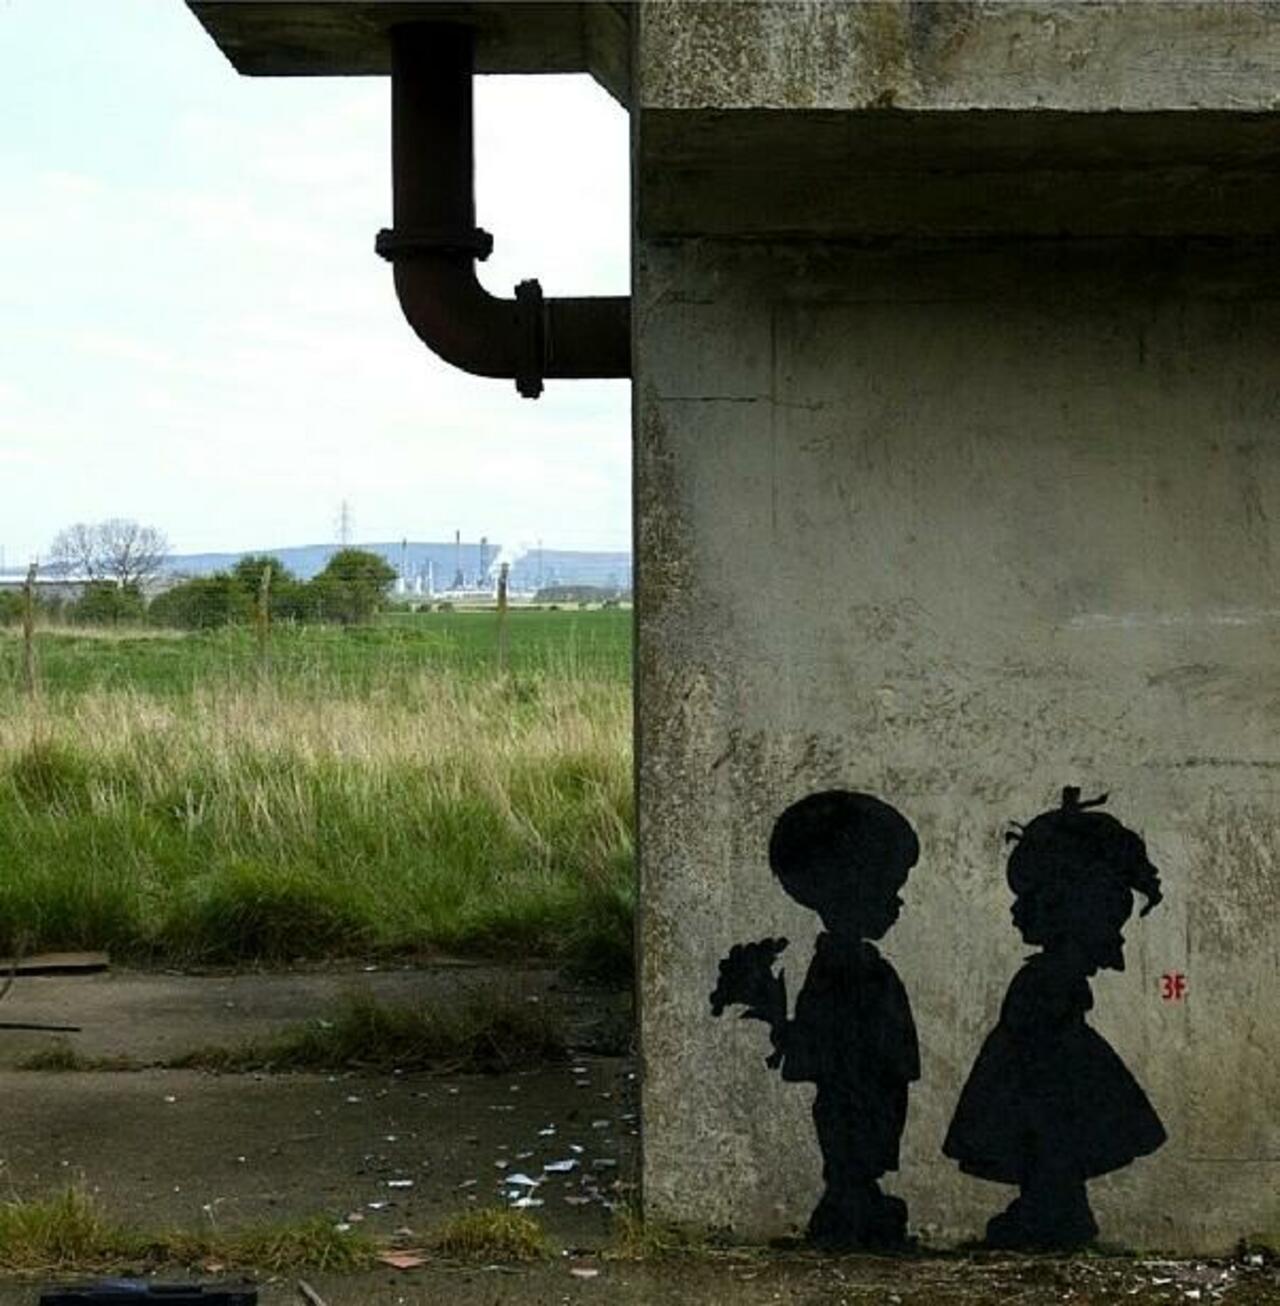 RT "@GoogleStreetArt: Found love in a hopeless place!

Street Art by 3fountains 

#art #mural #graffiti #streetart http://t.co/NQpuvAhQsh"